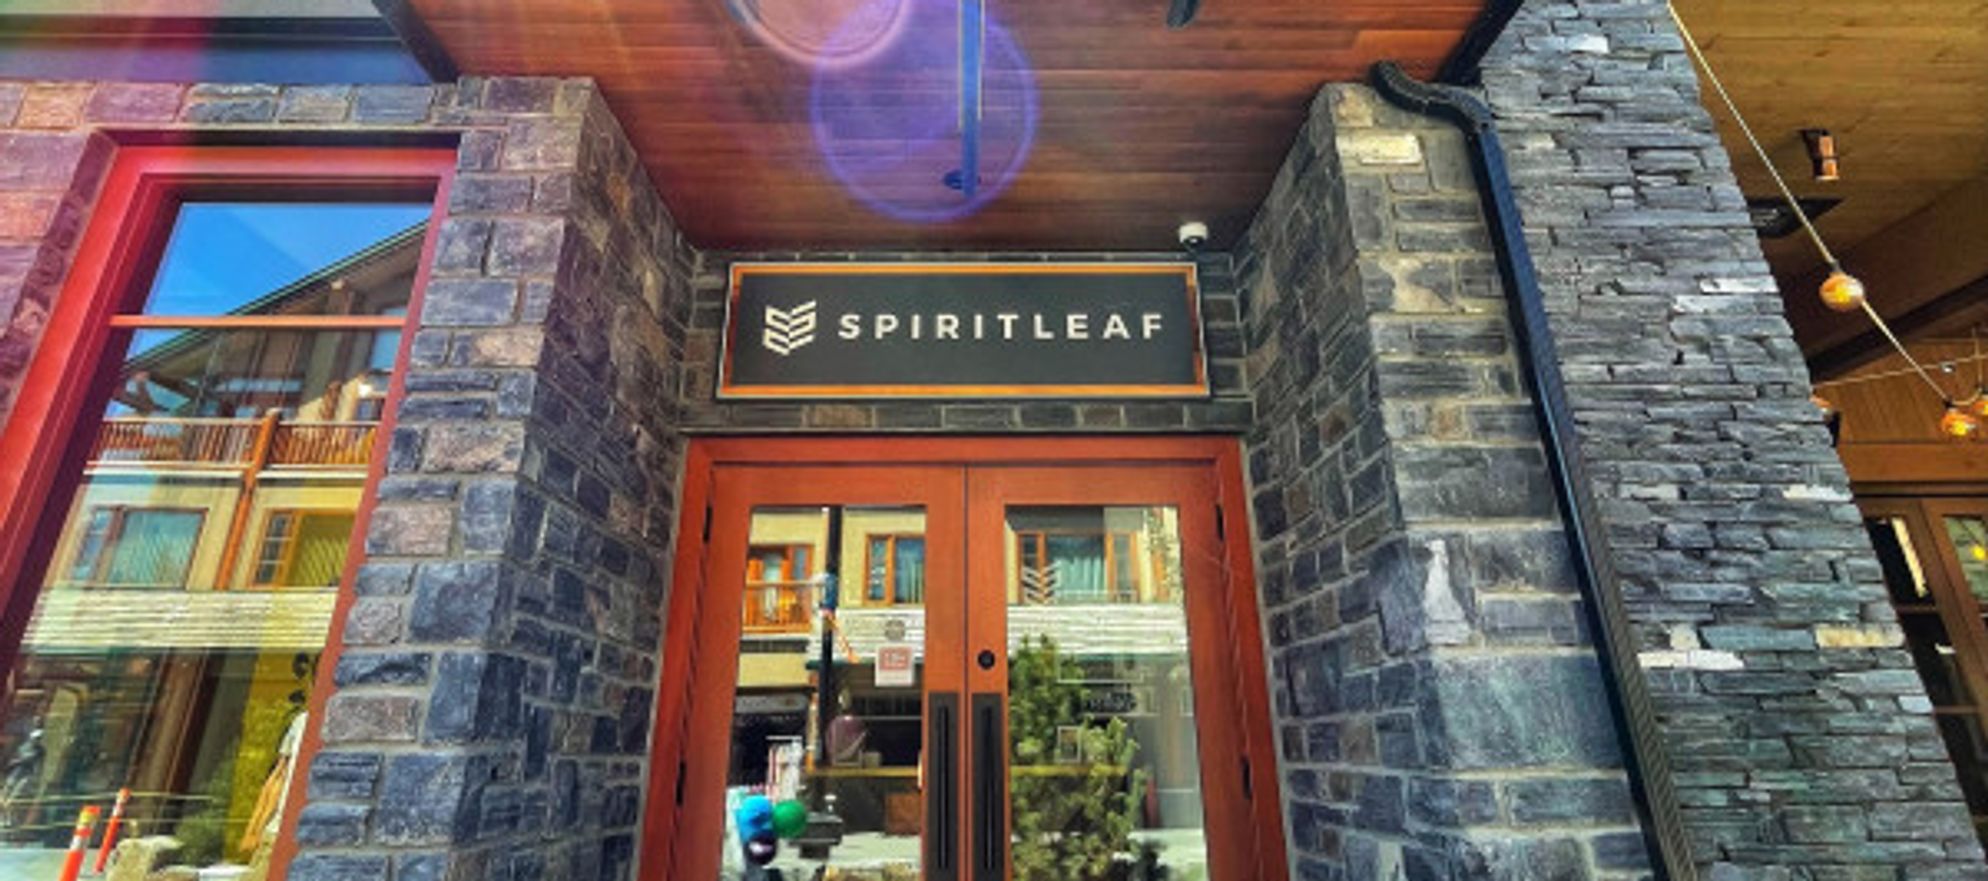 Spiritleaf Banff